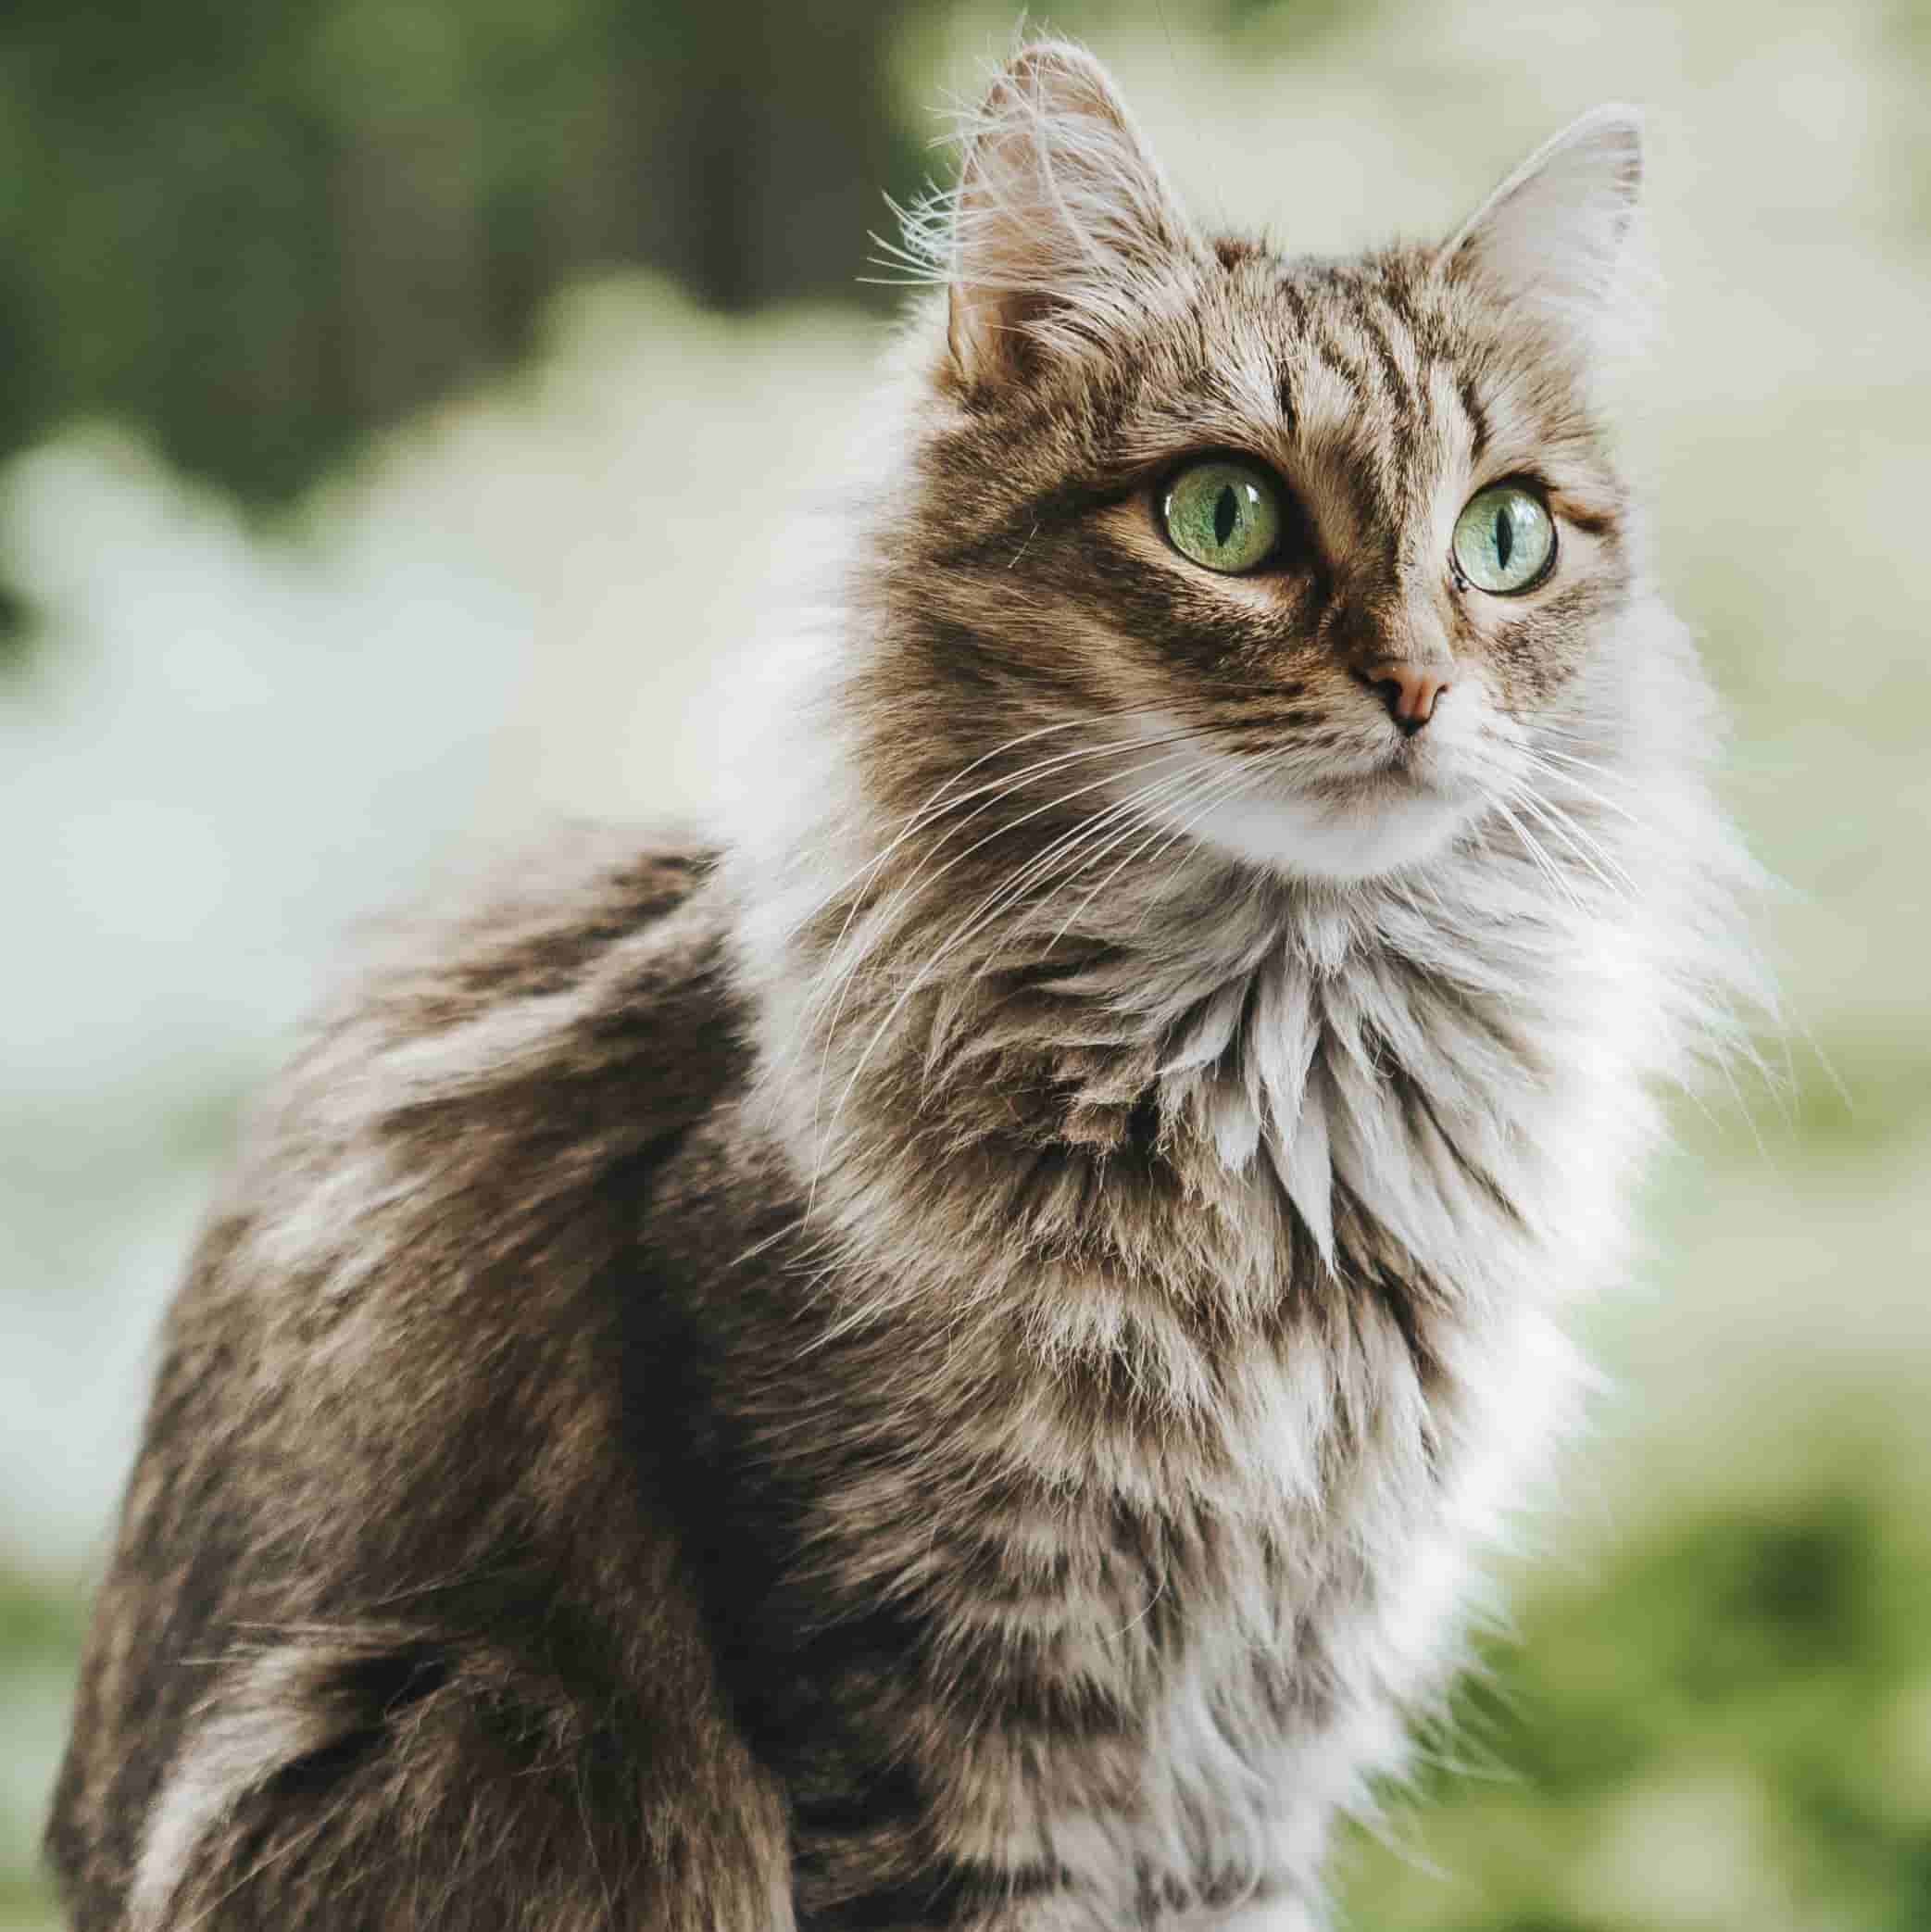 La terre de diatomée serait efficace dans la lutte contre les puces des  chats.